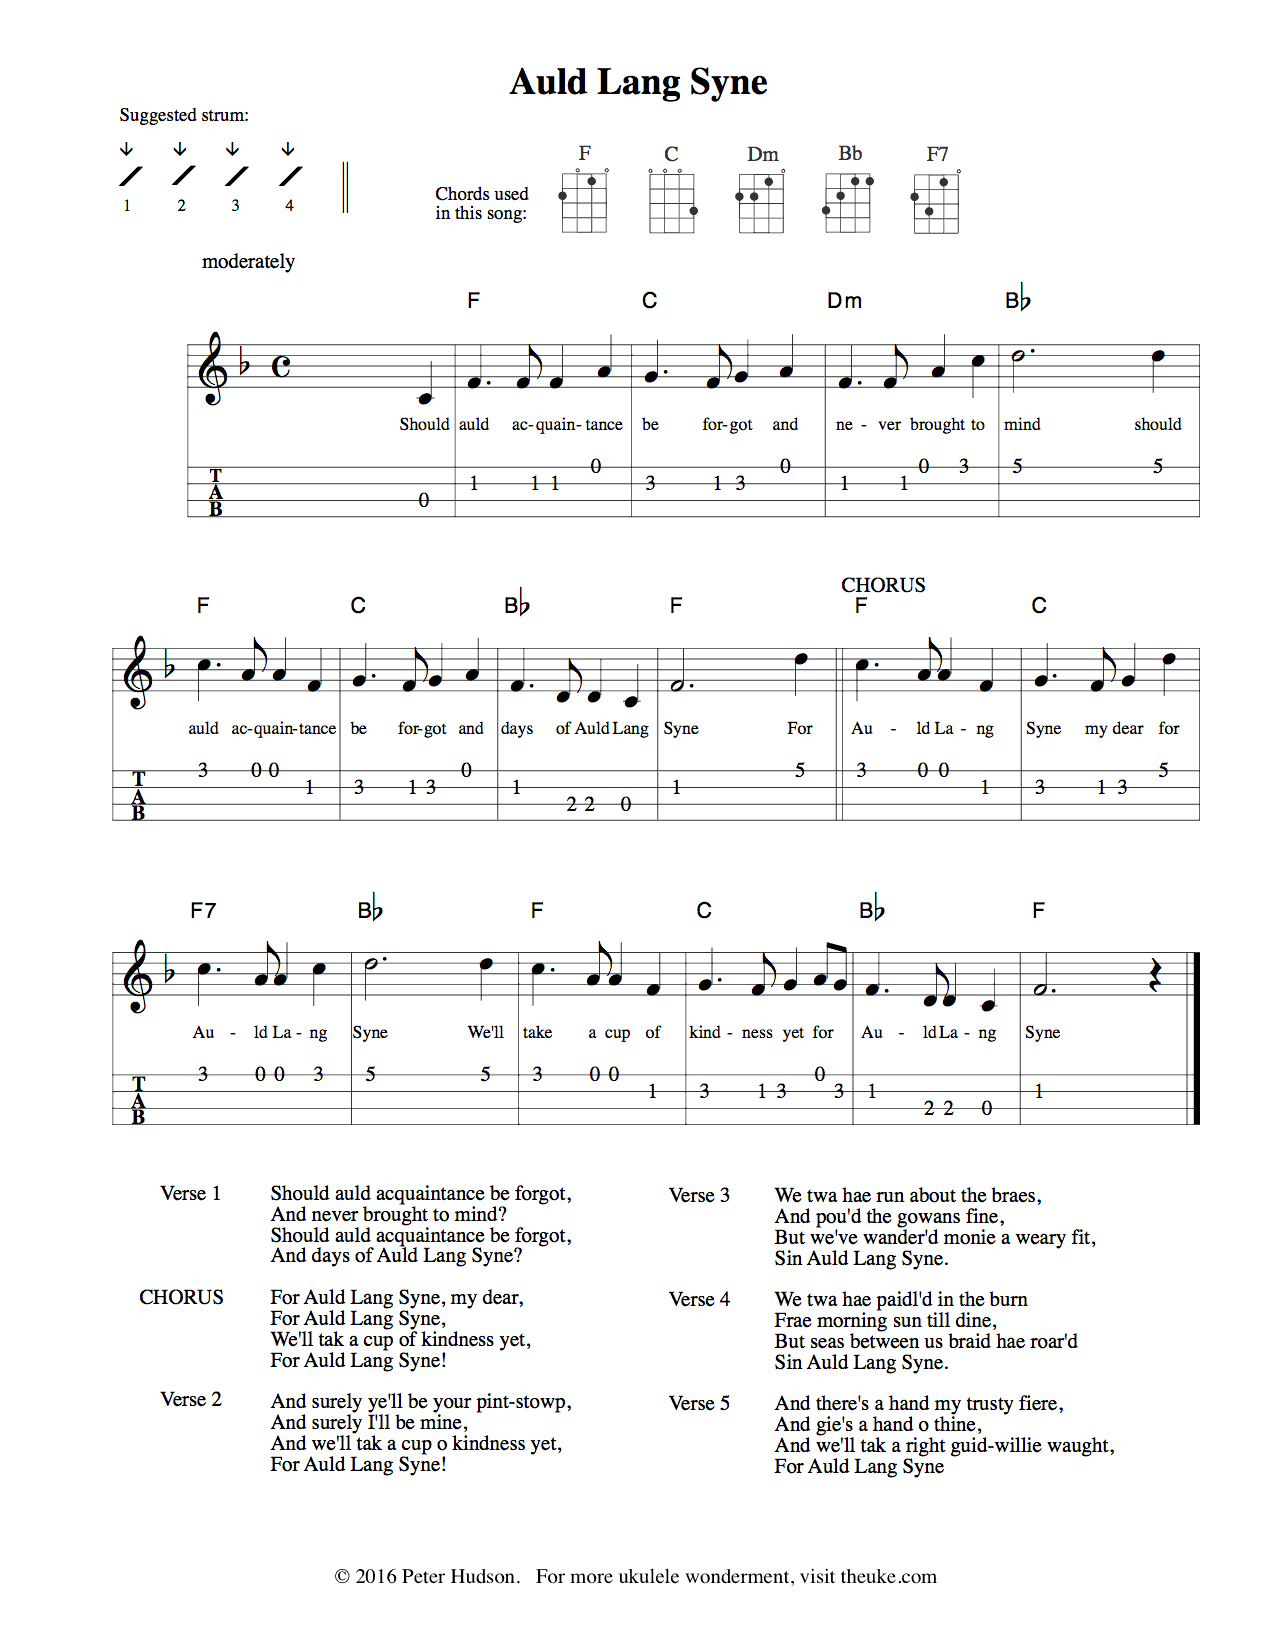 instructions and sheet music for ukulele